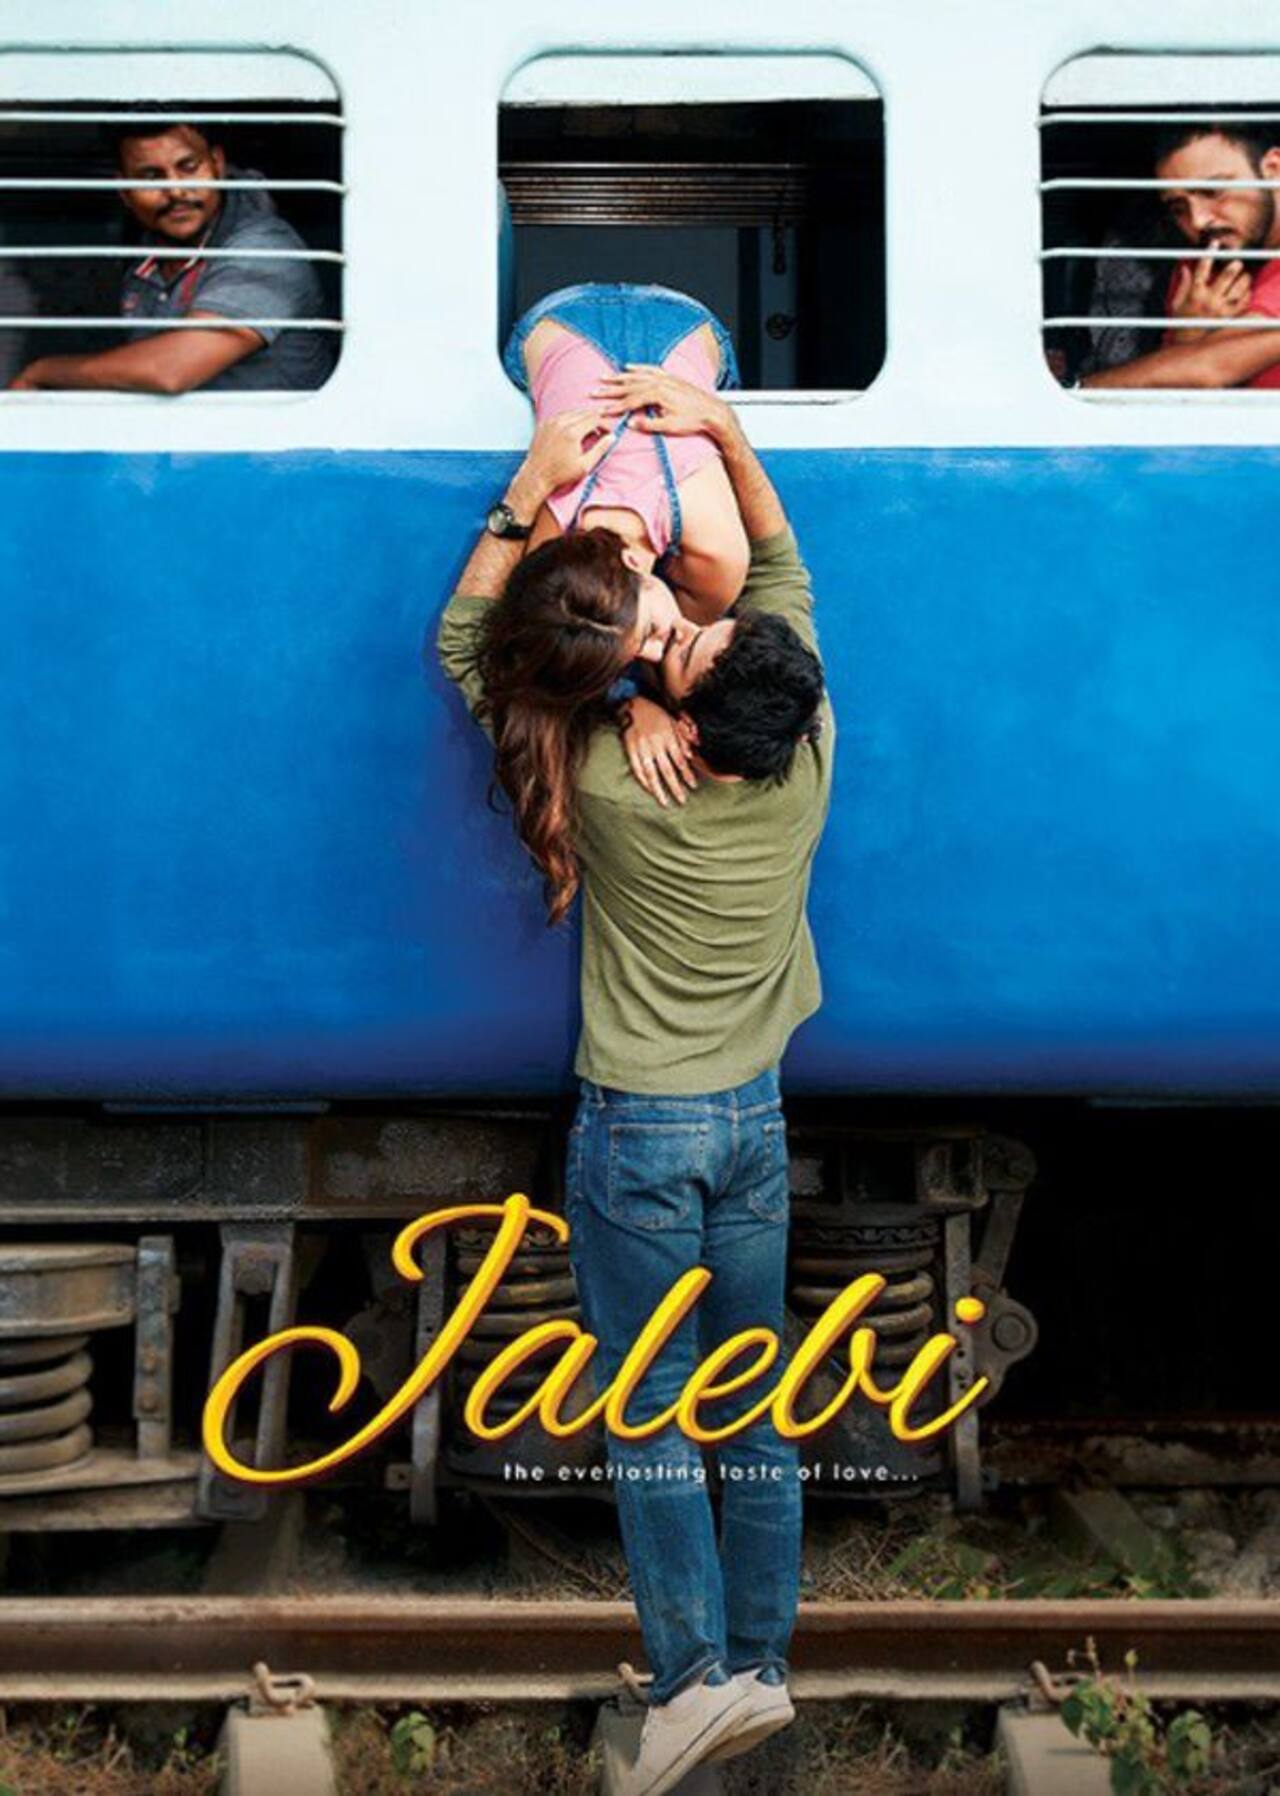 महेश भट्ट की फिल्म 'जलेबी' का पोस्टर कर रहा है फ्रेश लव स्टोरी की ओर इशारा, 12 अक्टूबर को रिलीज होगी फिल्म​